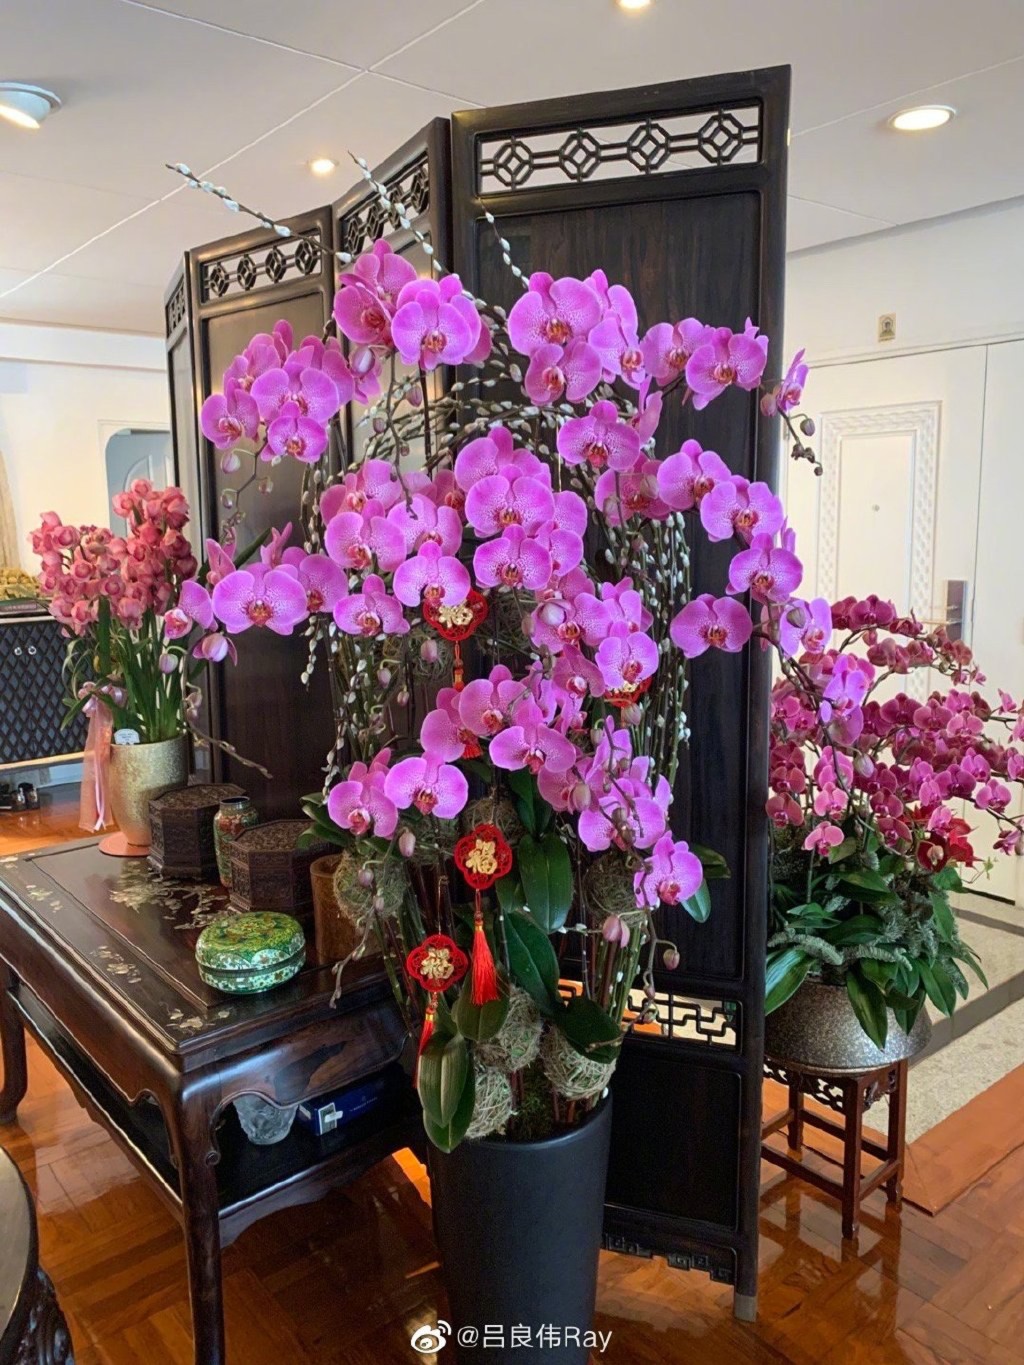 杨小娟在家中摆放了不少花及盆栽。